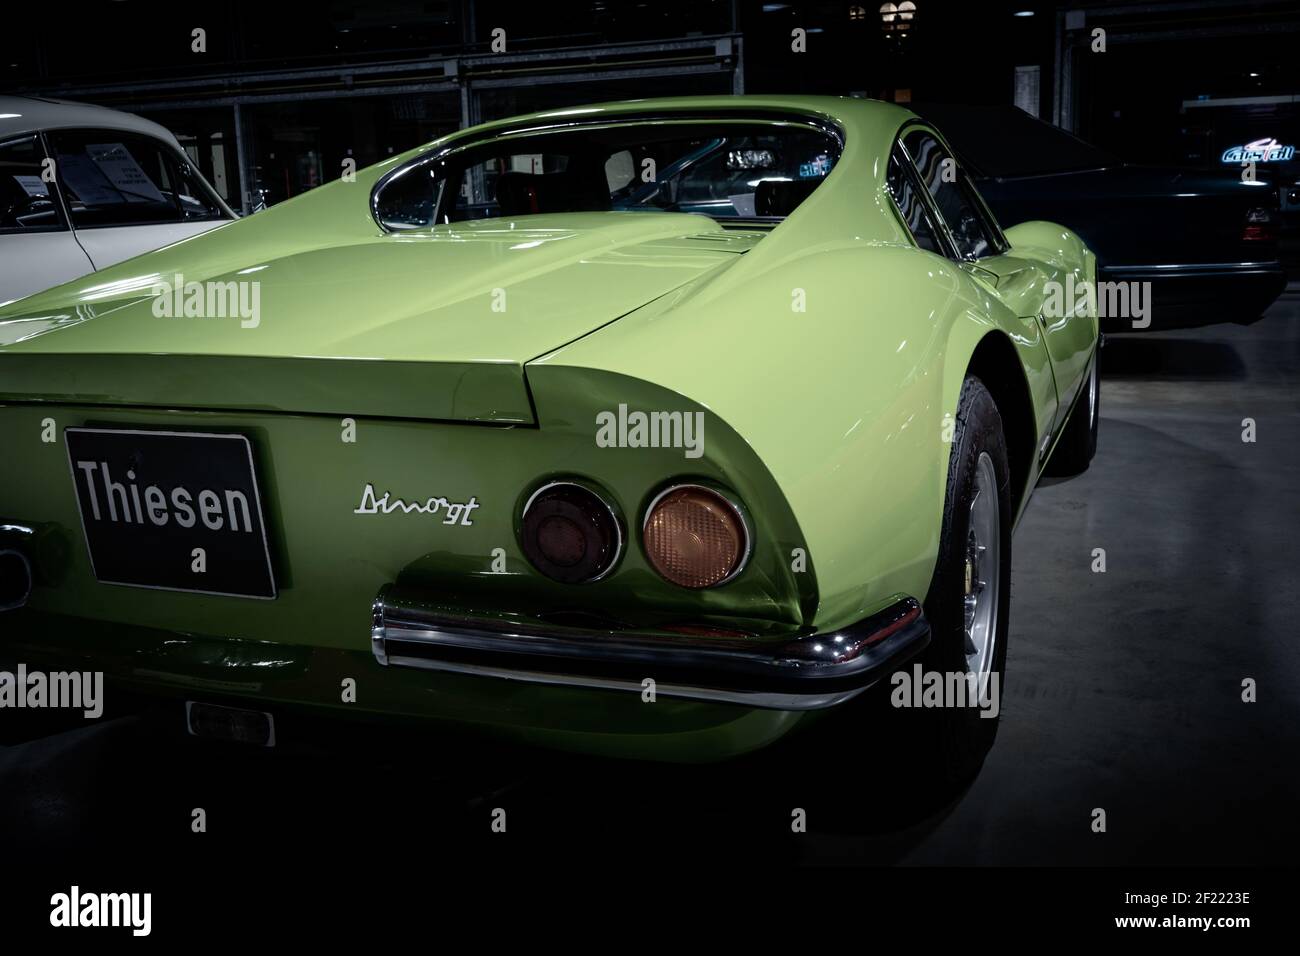 BERLIN, DEUTSCHLAND - 25. Nov 2020: DEUTSCHLAND 25. Nov 2020. Oldtimer grün Ferrari Dino GT, Oldtimer in einer öffentlichen Ausstellung in Berlin. Stockfoto